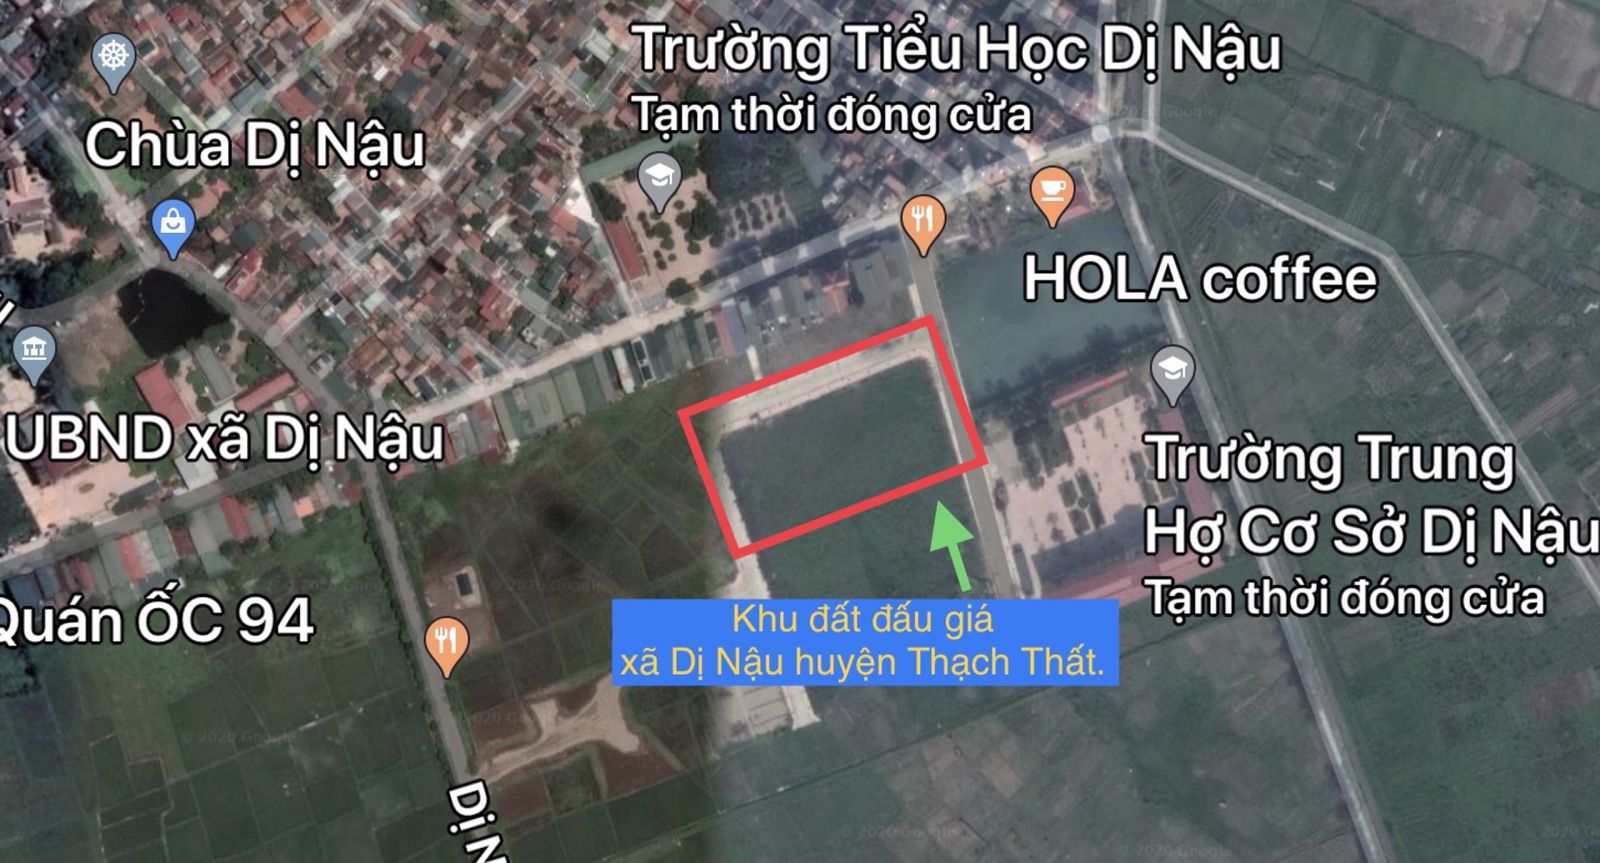 Vị trí khu đấu giá xã Dị Nậu huyện Thạch Thất